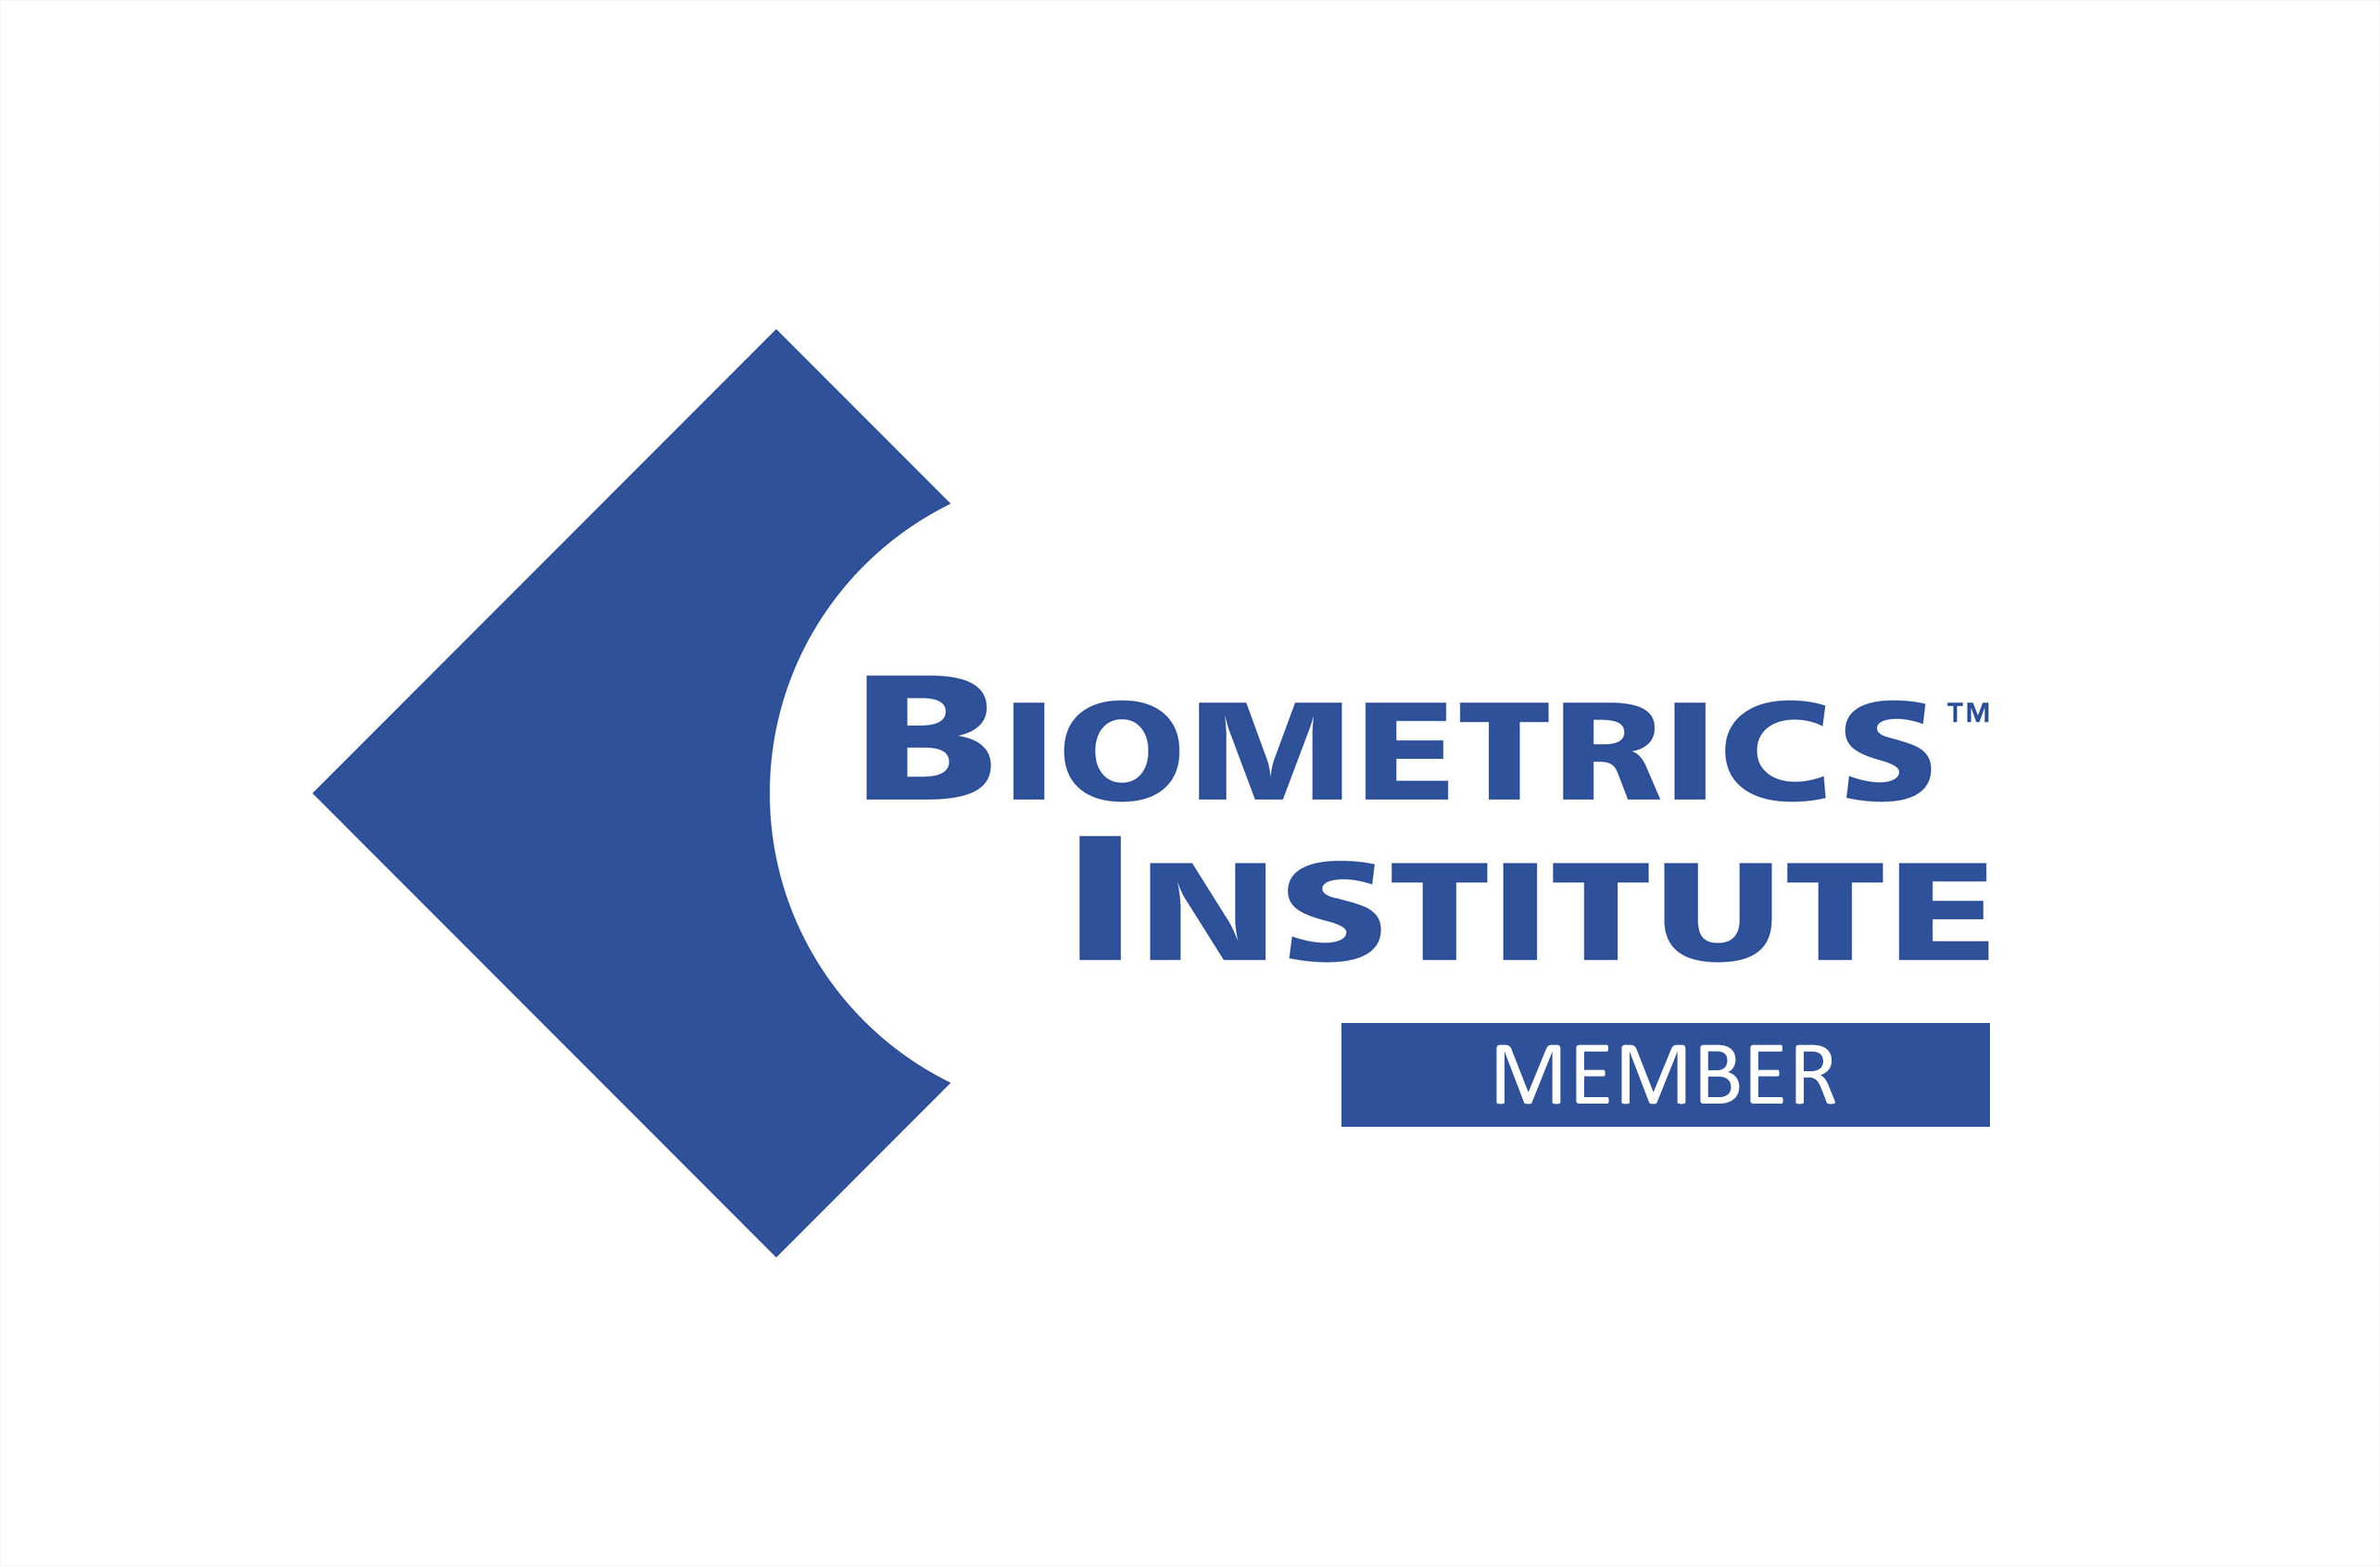 Biometrics Institute member badge